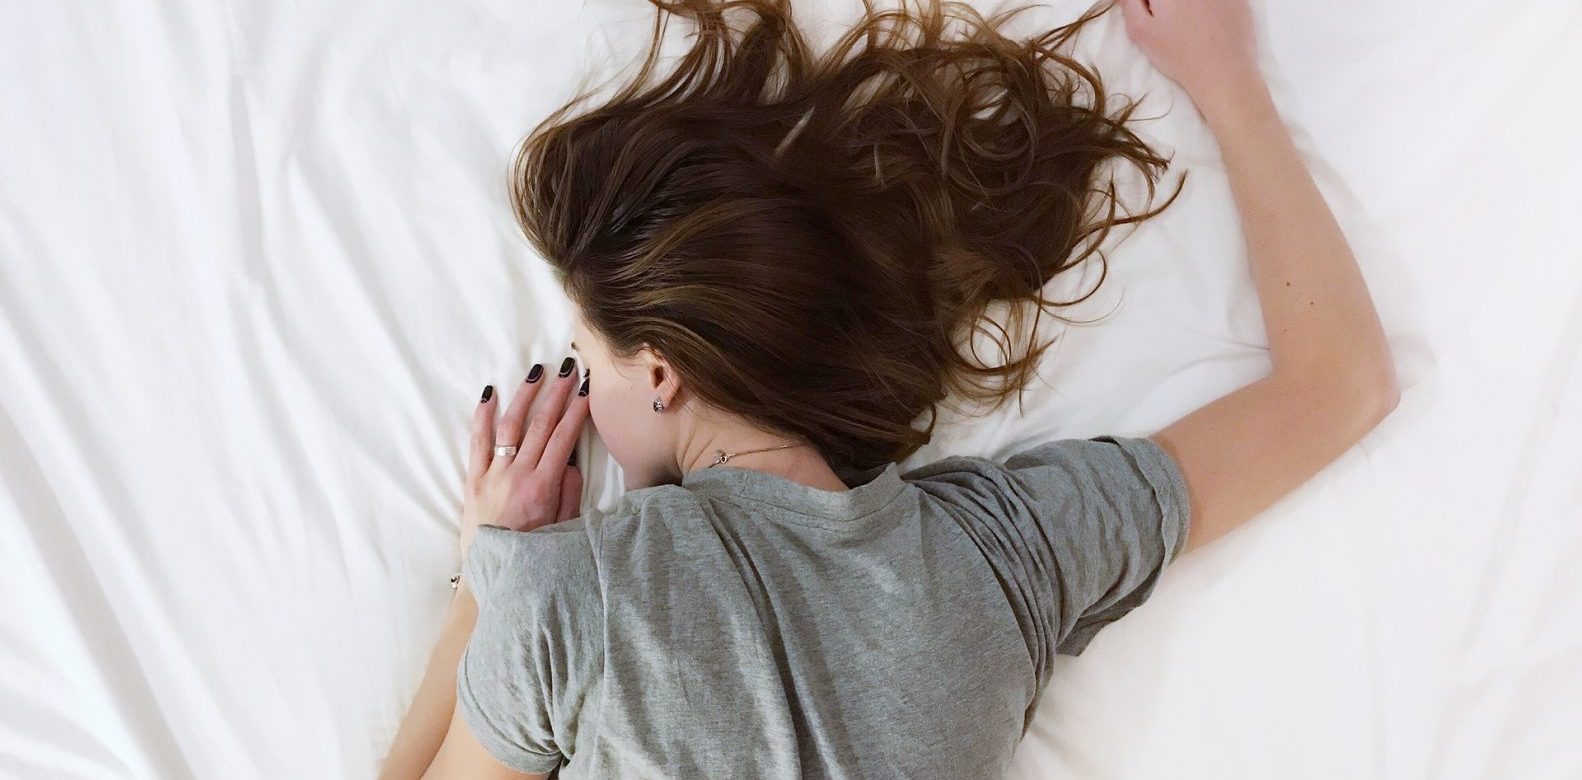 Από τι κινδυνεύουν οι γυναίκες που μειώνουν τον ύπνο